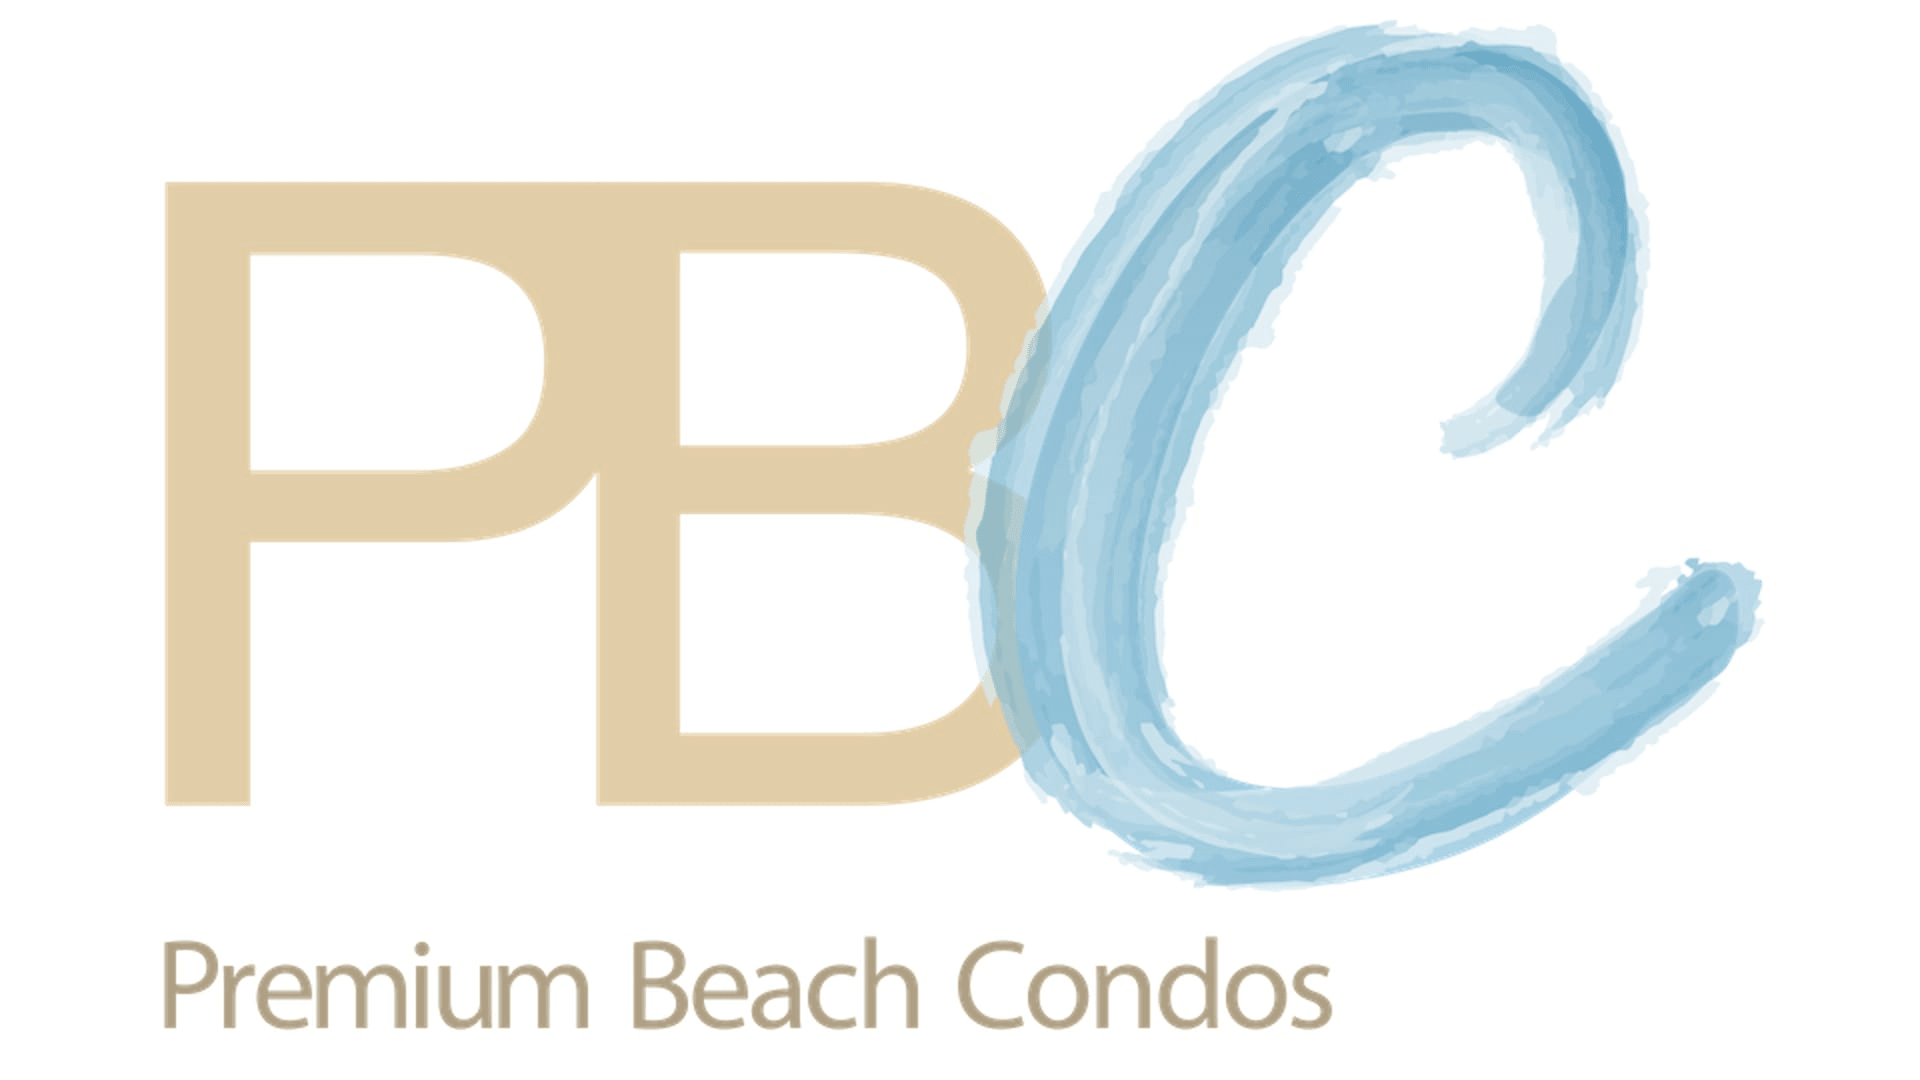 Premium Beach Condos